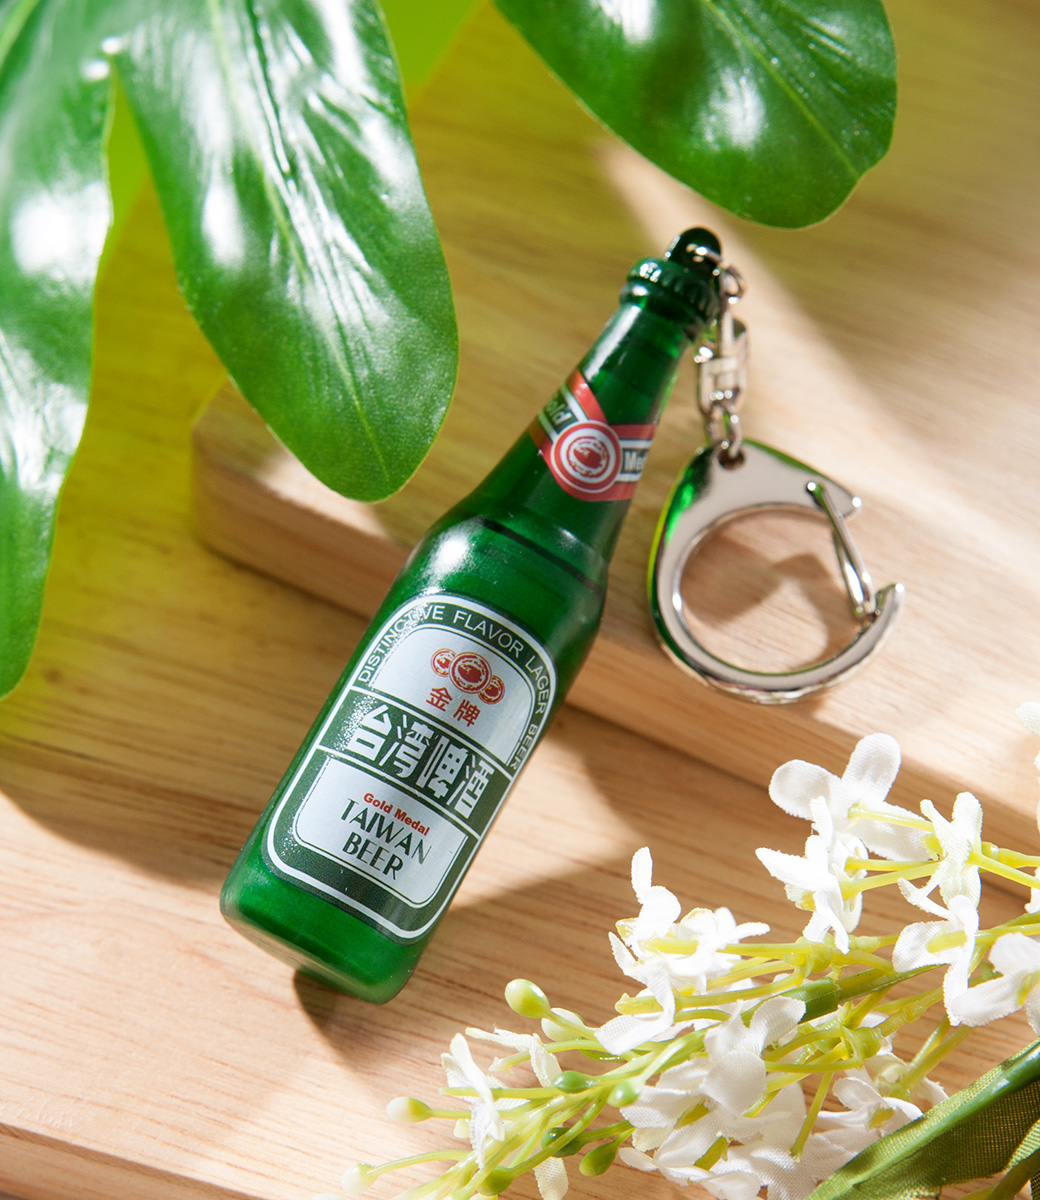 倡議「喝酒不開車 回家嗶悠遊」　 金牌台灣啤酒公益悠遊卡7月4日限量開賣